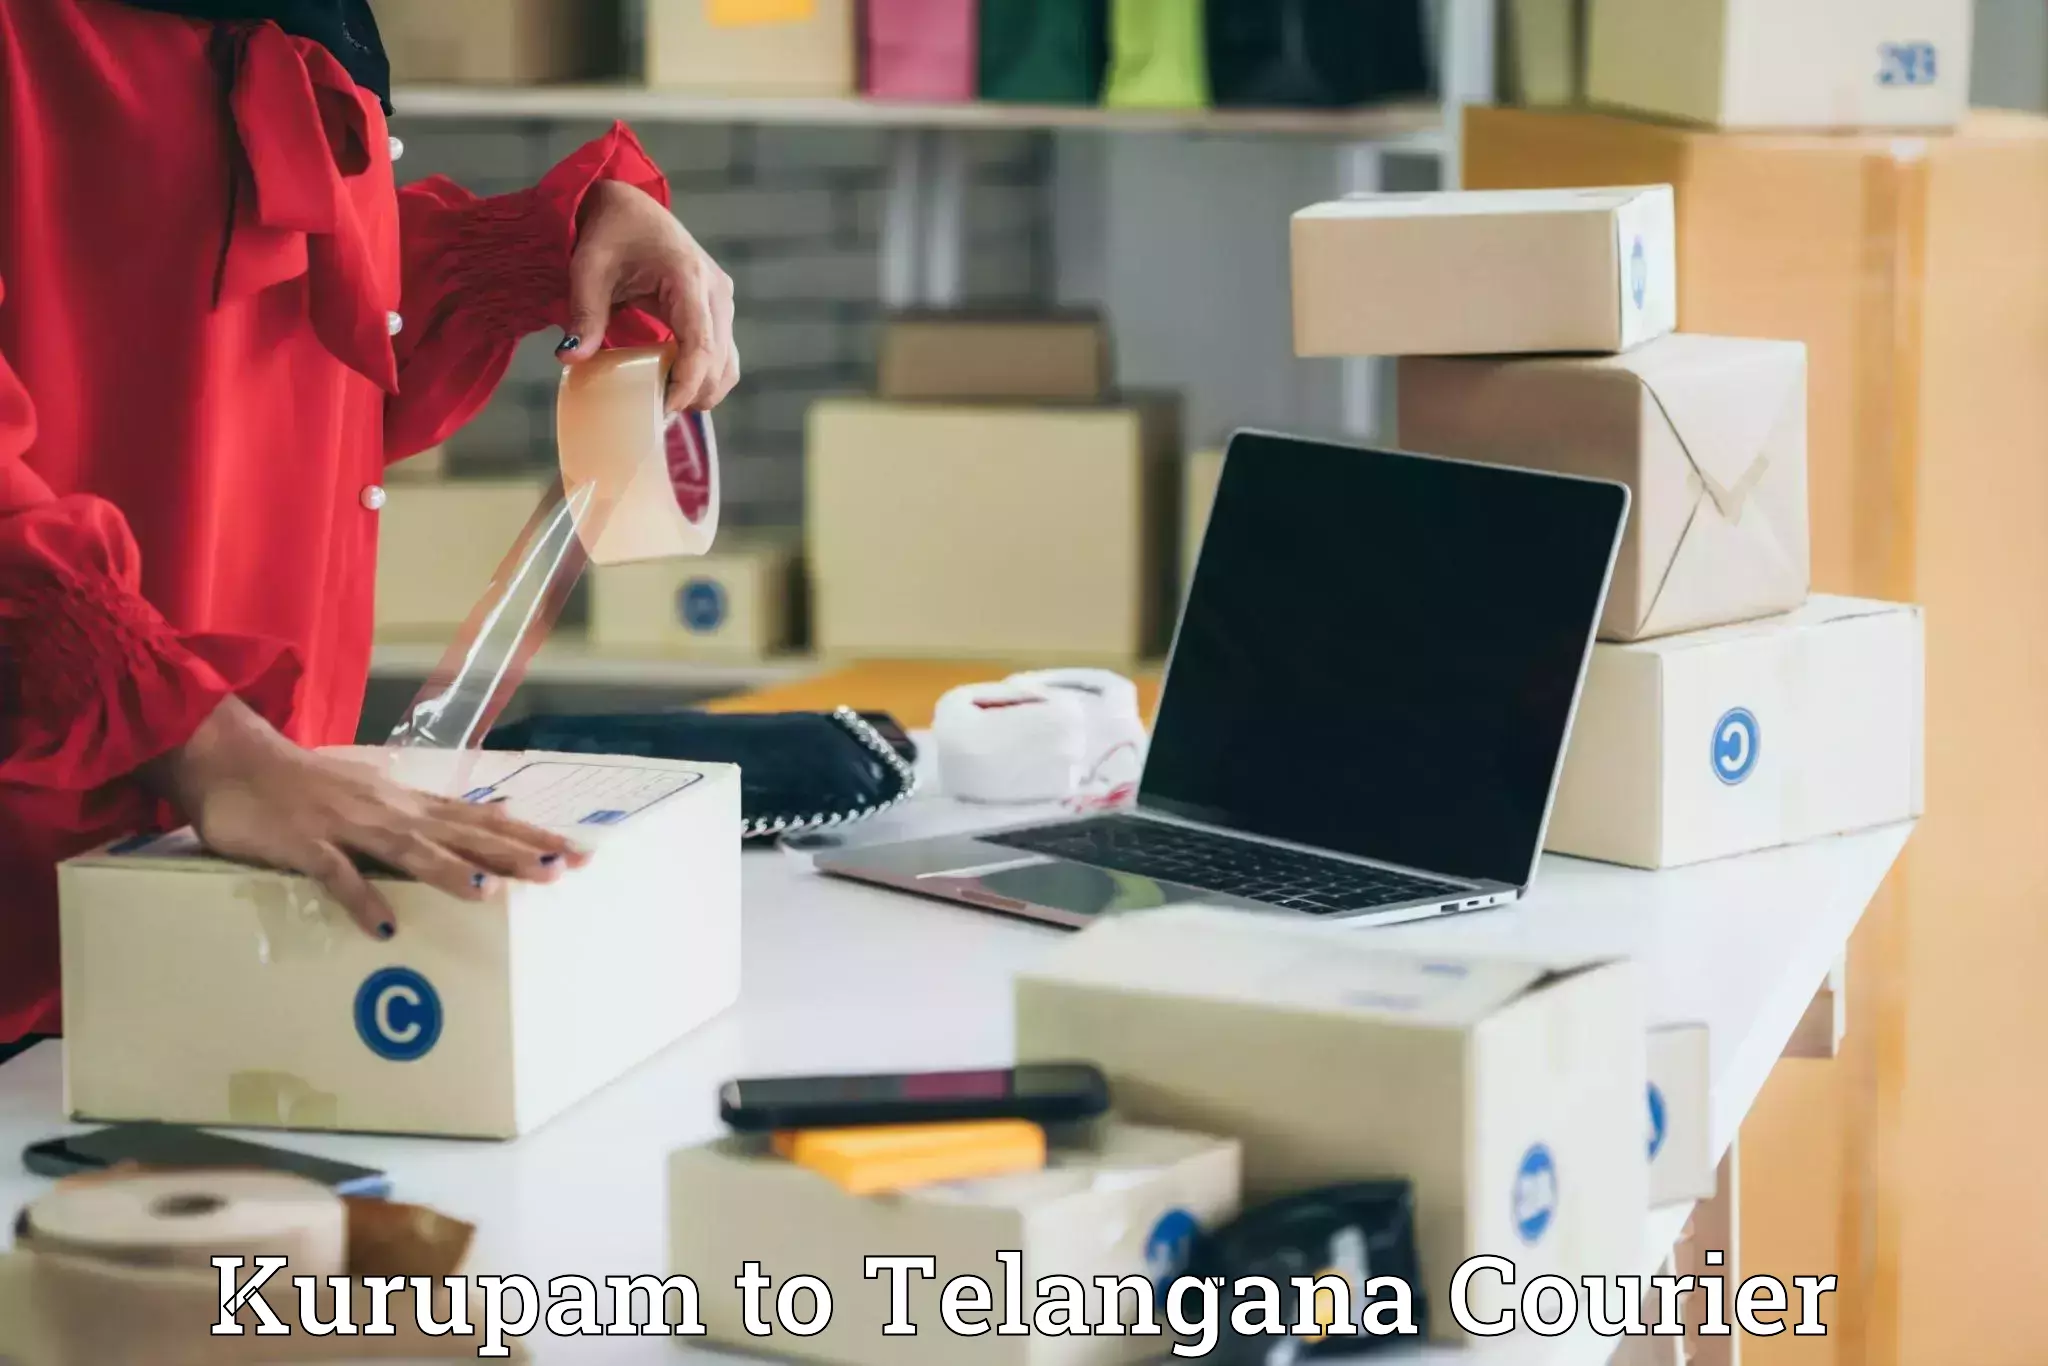 Cost-effective courier solutions Kurupam to Balanagar